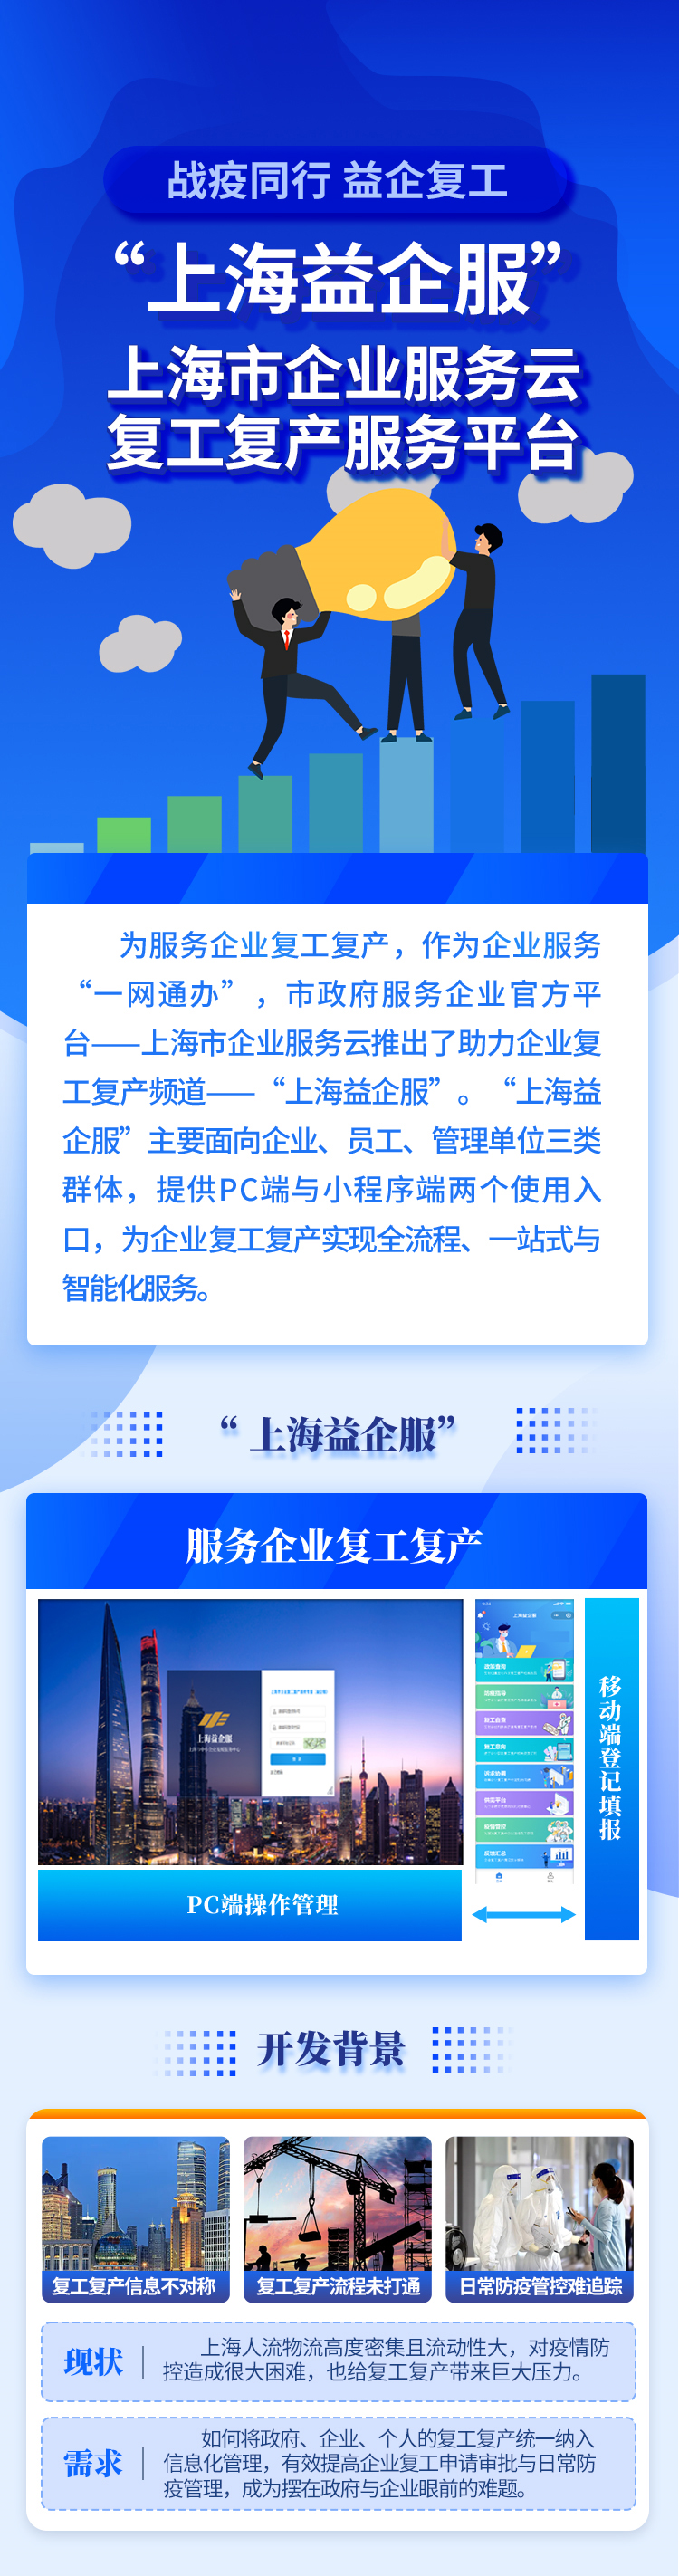 一图读懂 | 上海市企业复工复产服务专窗上线